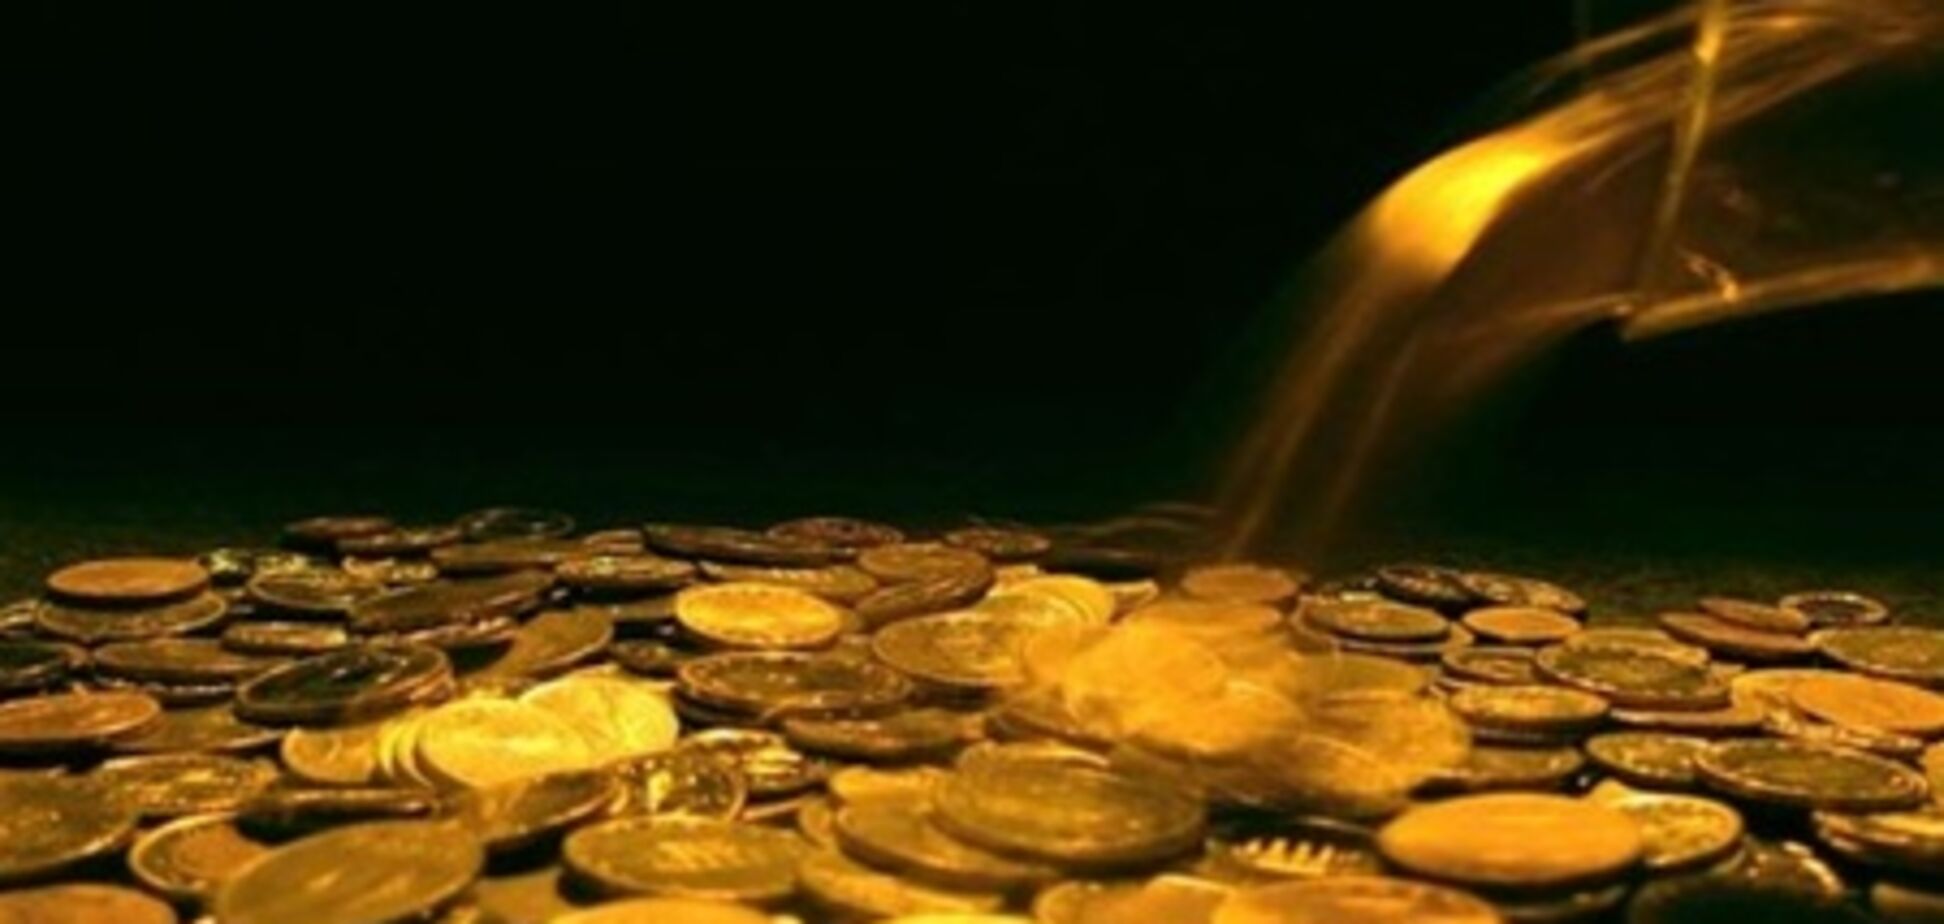 НБУ выпустит новые монеты из чистого золота